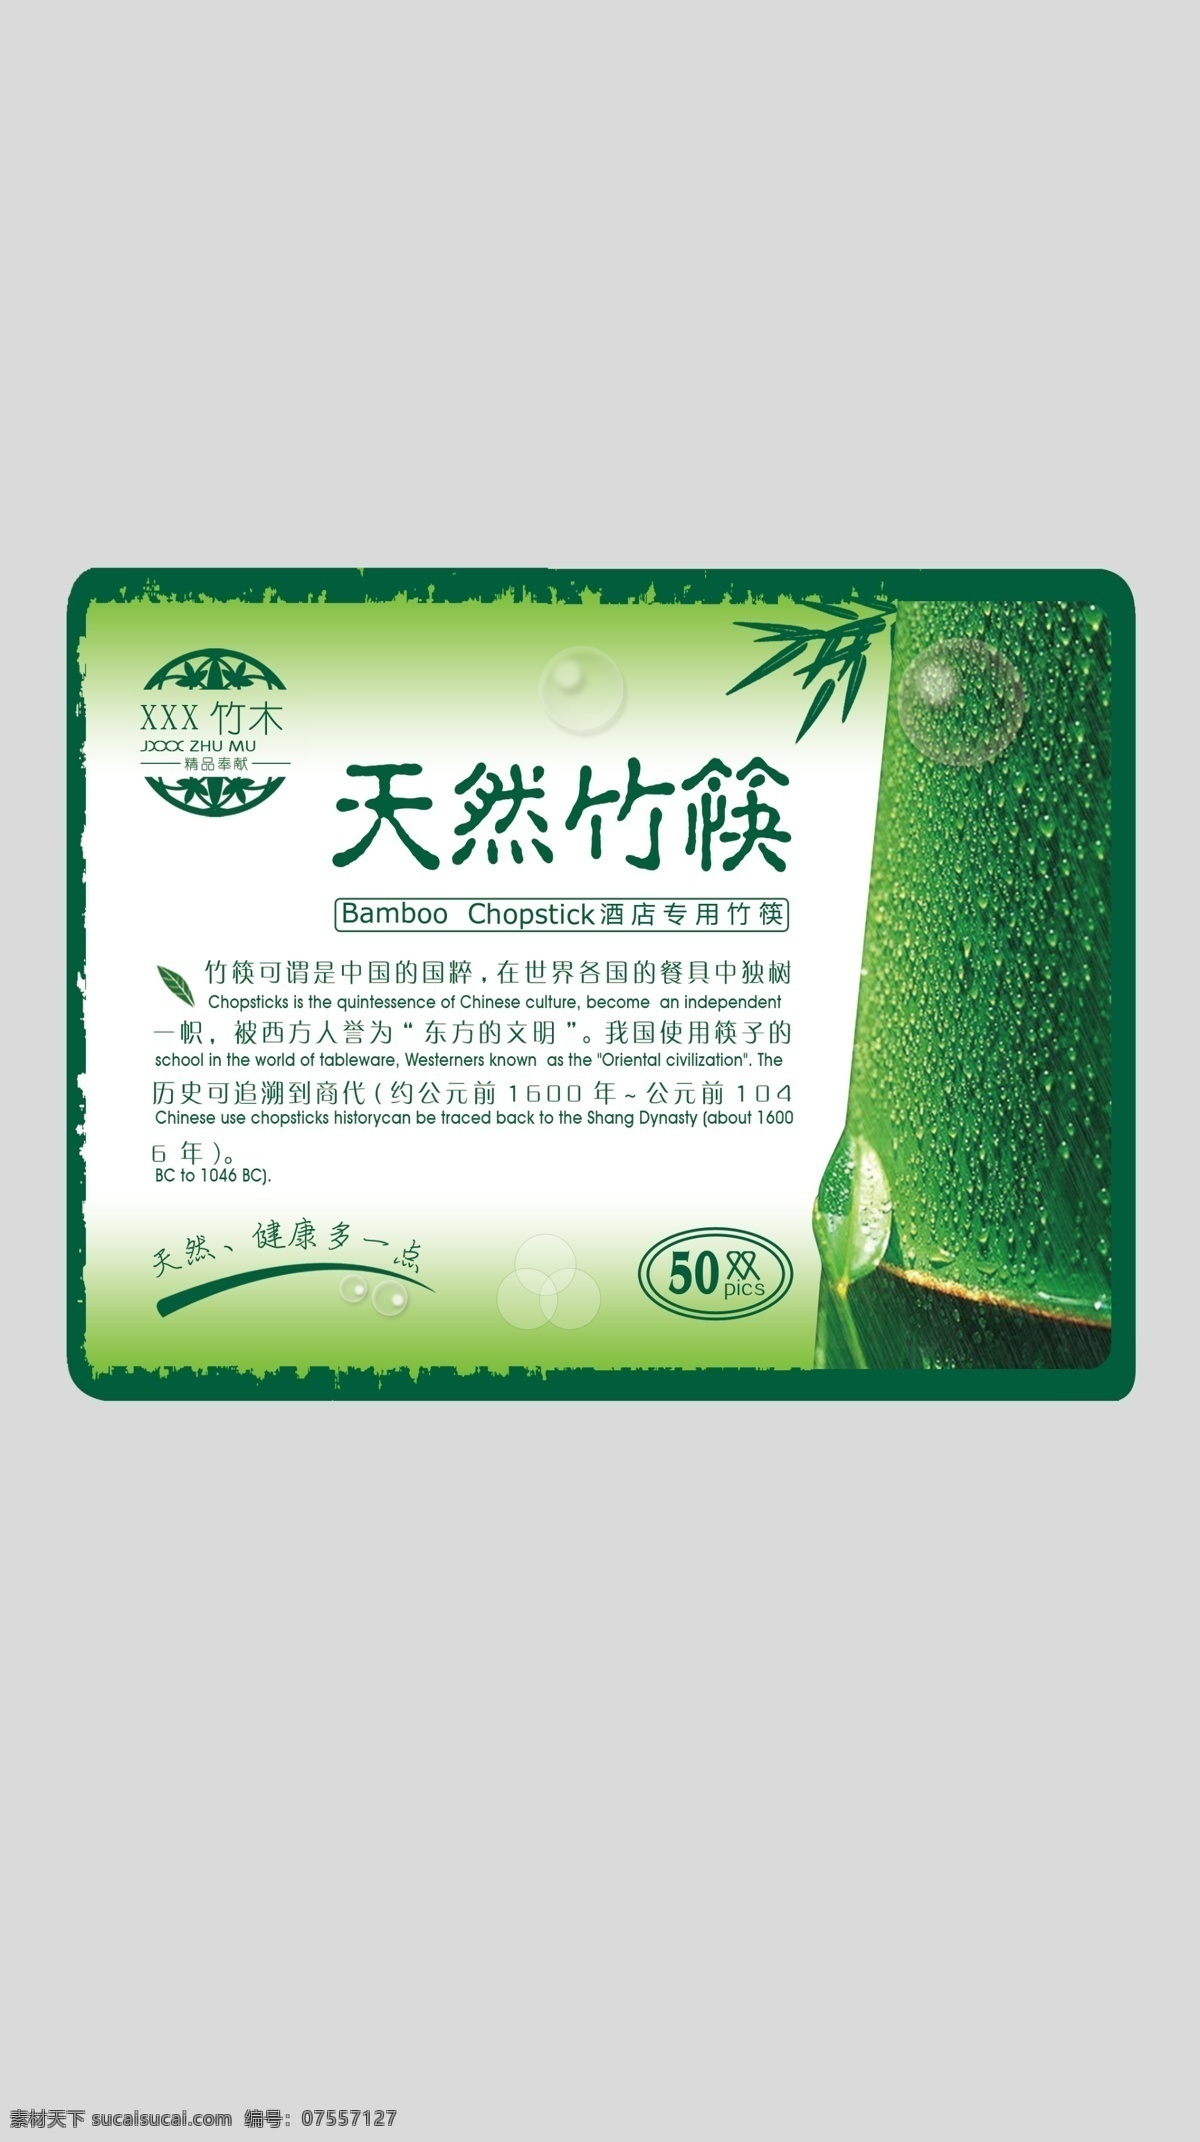 天然竹筷包装 竹筷包装 自定义品牌 酒店 大包装 包装设计 广告设计模板 源文件